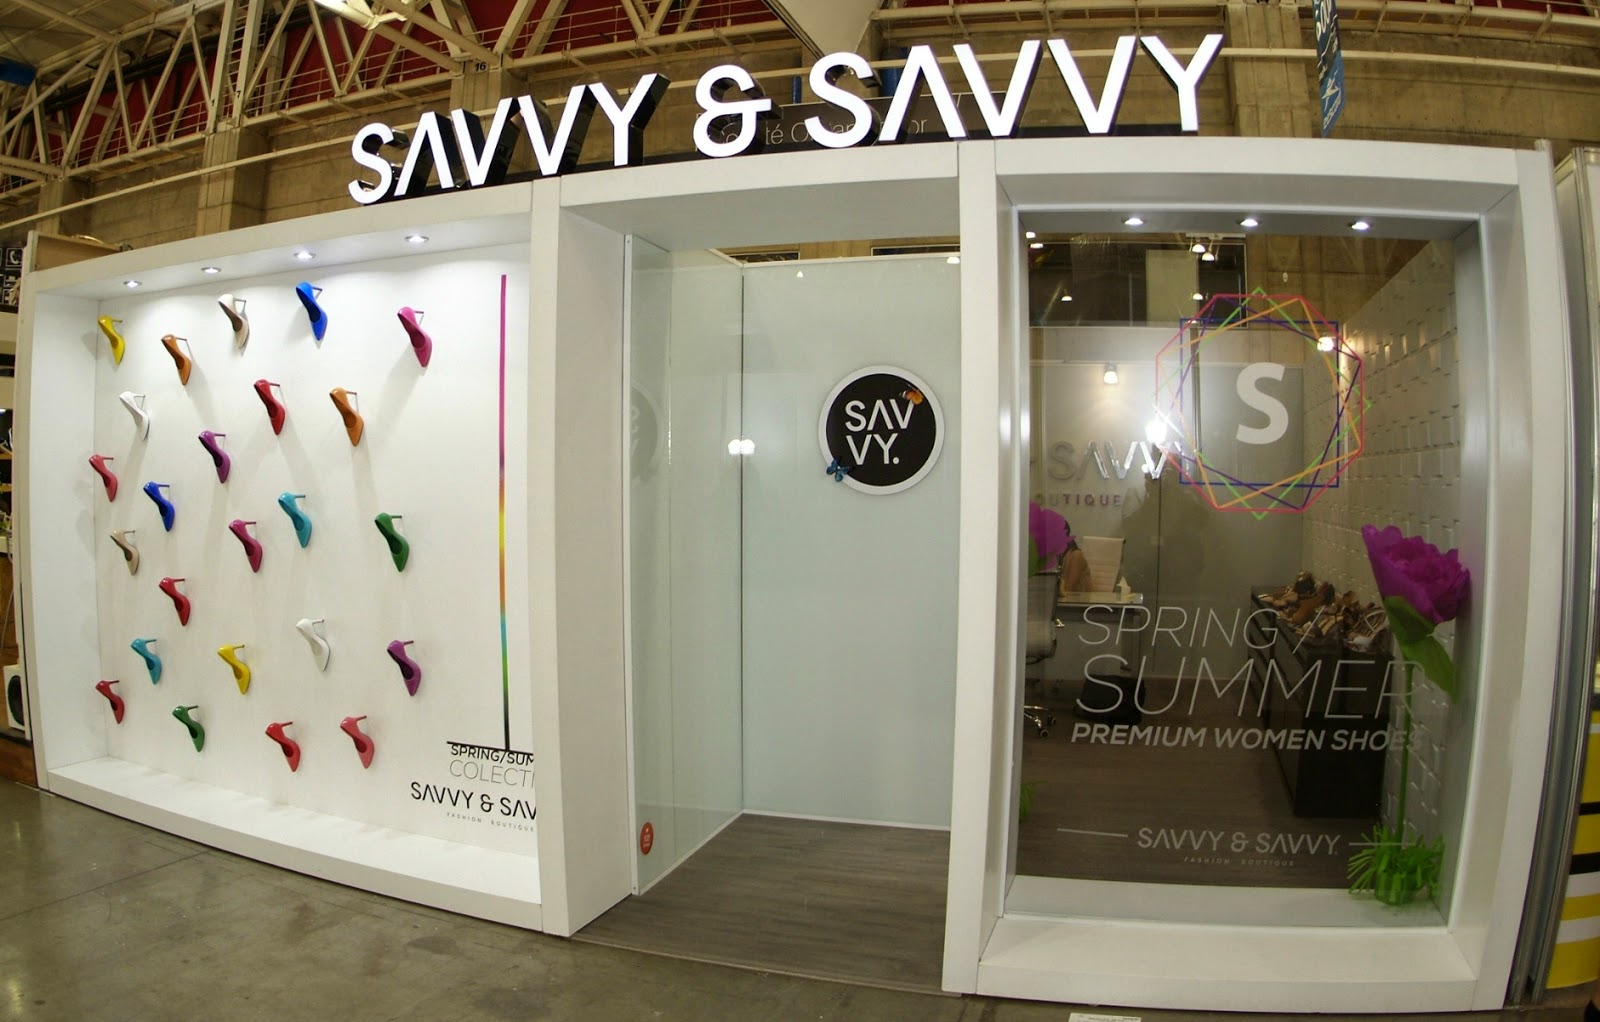 sapica agosto 2014, poliforum, exposición de calzado y artículos de piel, savvy & savvy